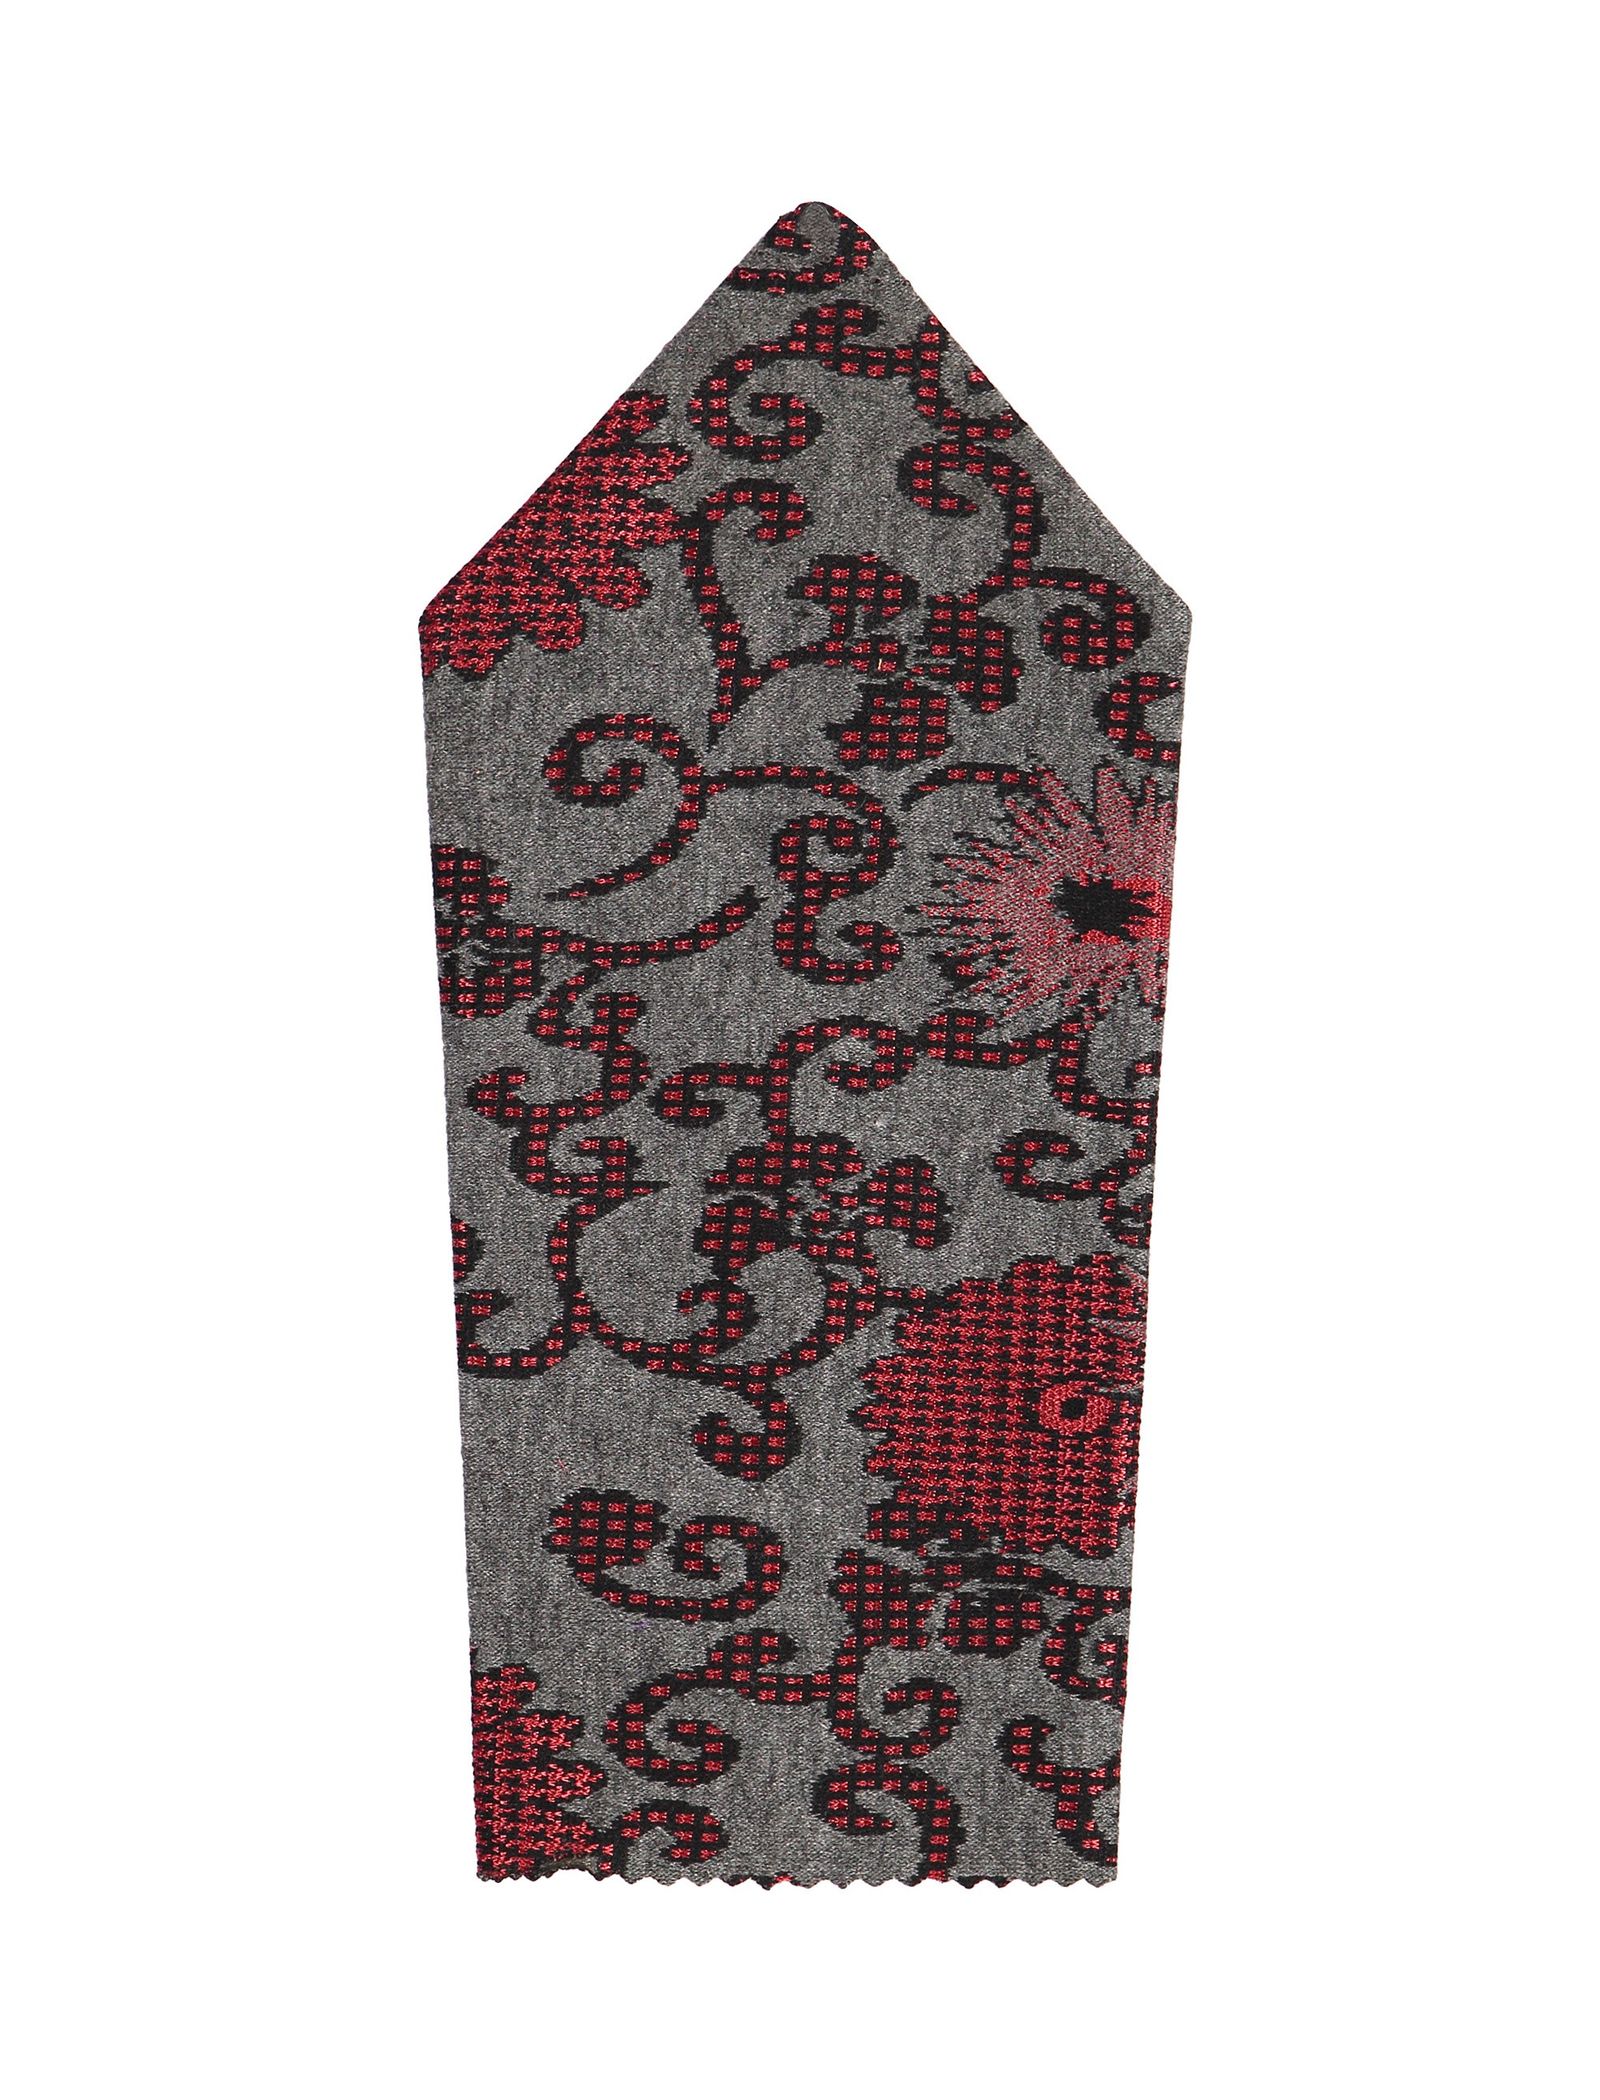 دستمال جیب طرح دار مردانه - خانه مد راد - قرمز و ط.وسي - 1